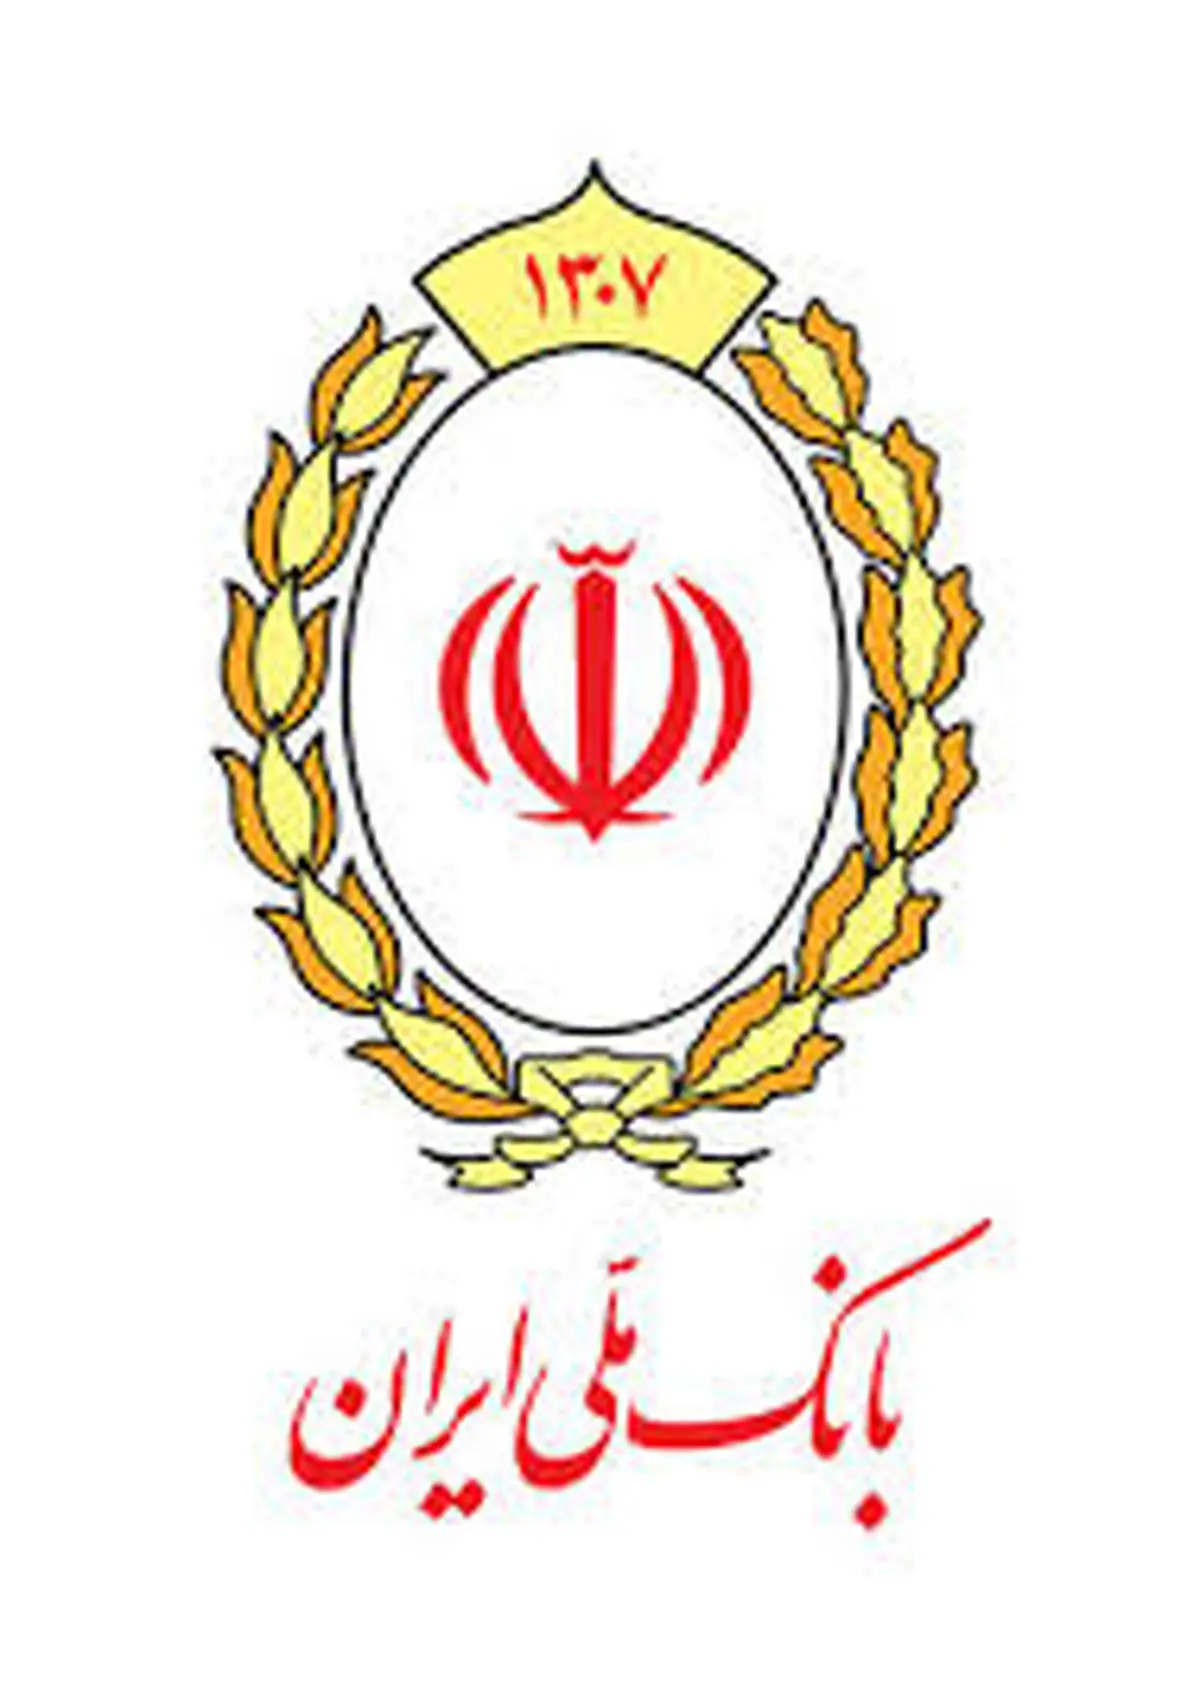 تکمیل زنجیره ارزش صنعت بلور و کریستال با تامین مالی بانک ملی ایران

